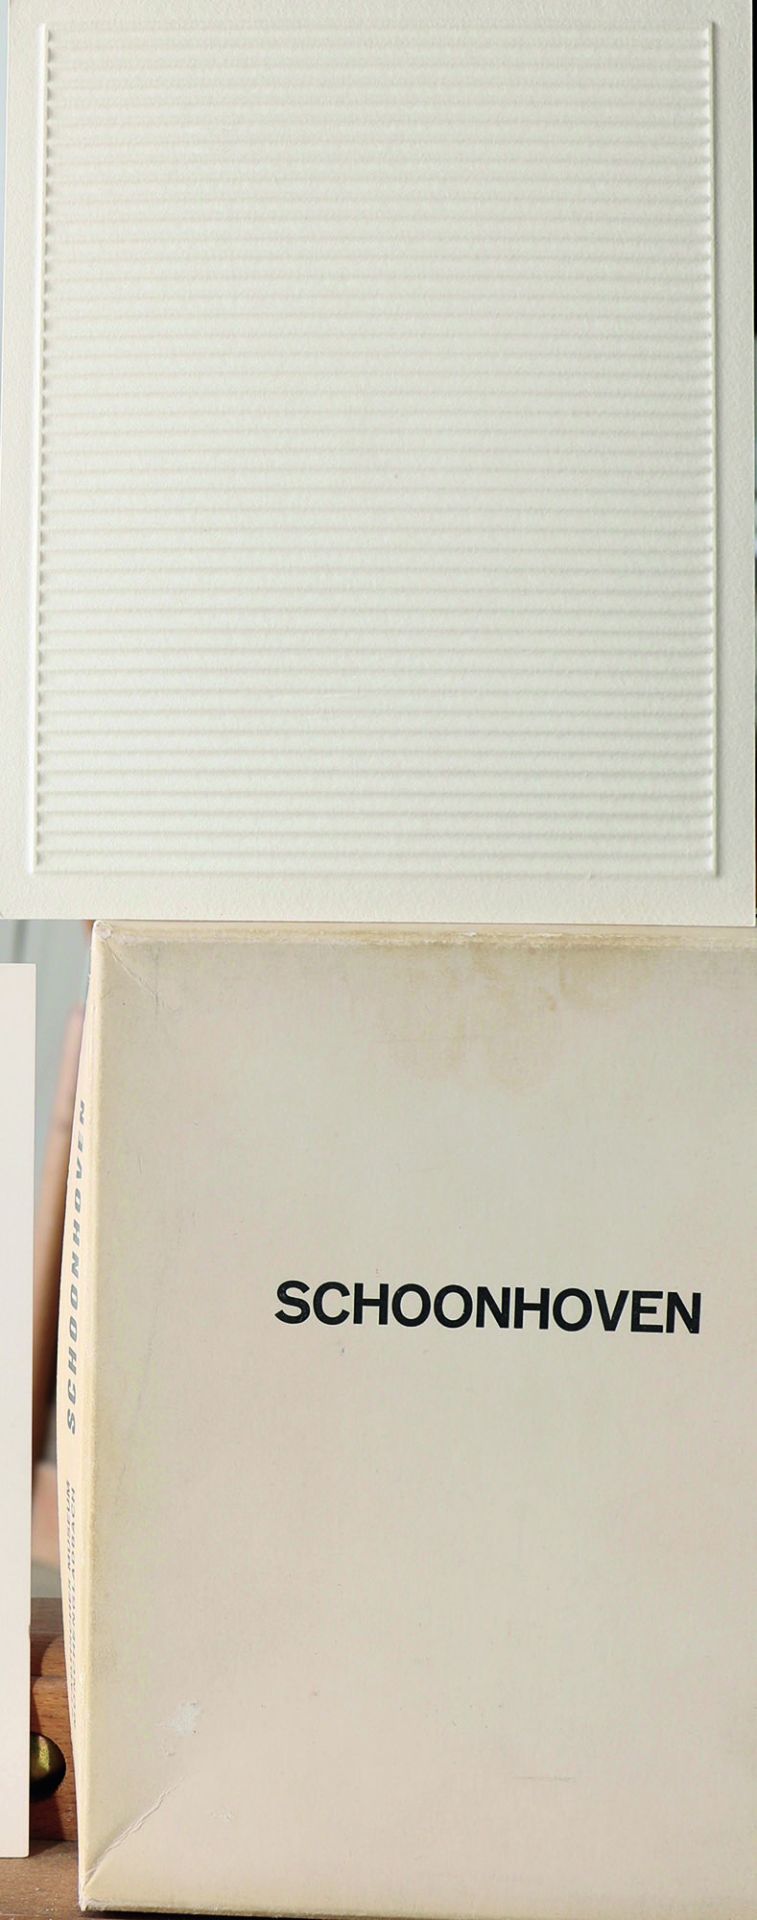 Jan J. Schoonhoven*, (1914-1994) - Bild 2 aus 3